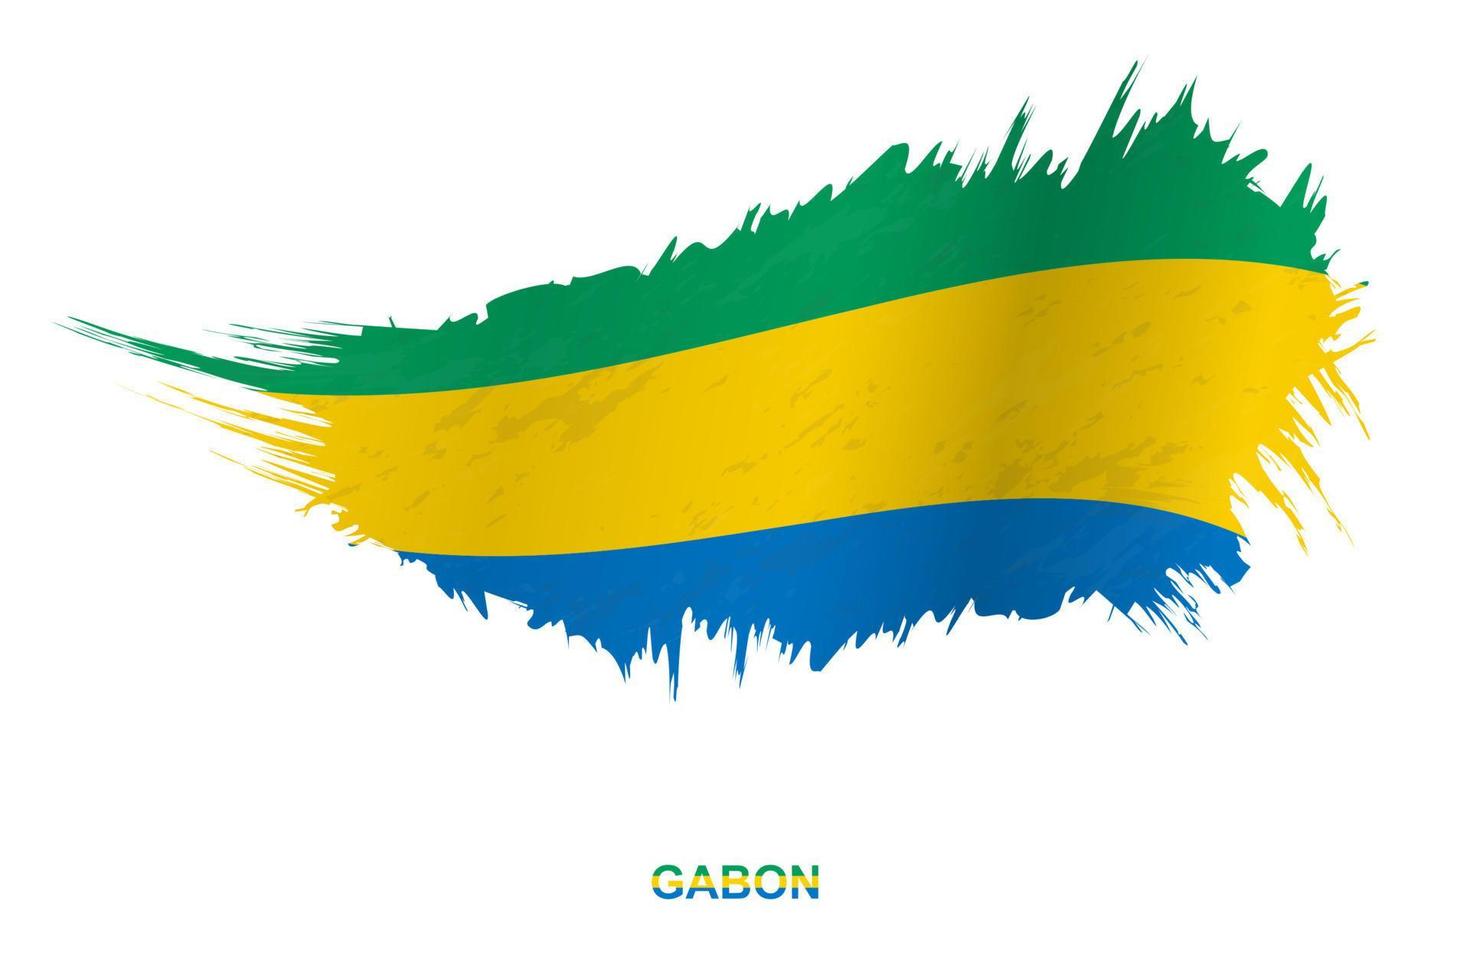 bandeira do gabão em estilo grunge com efeito acenando. vetor